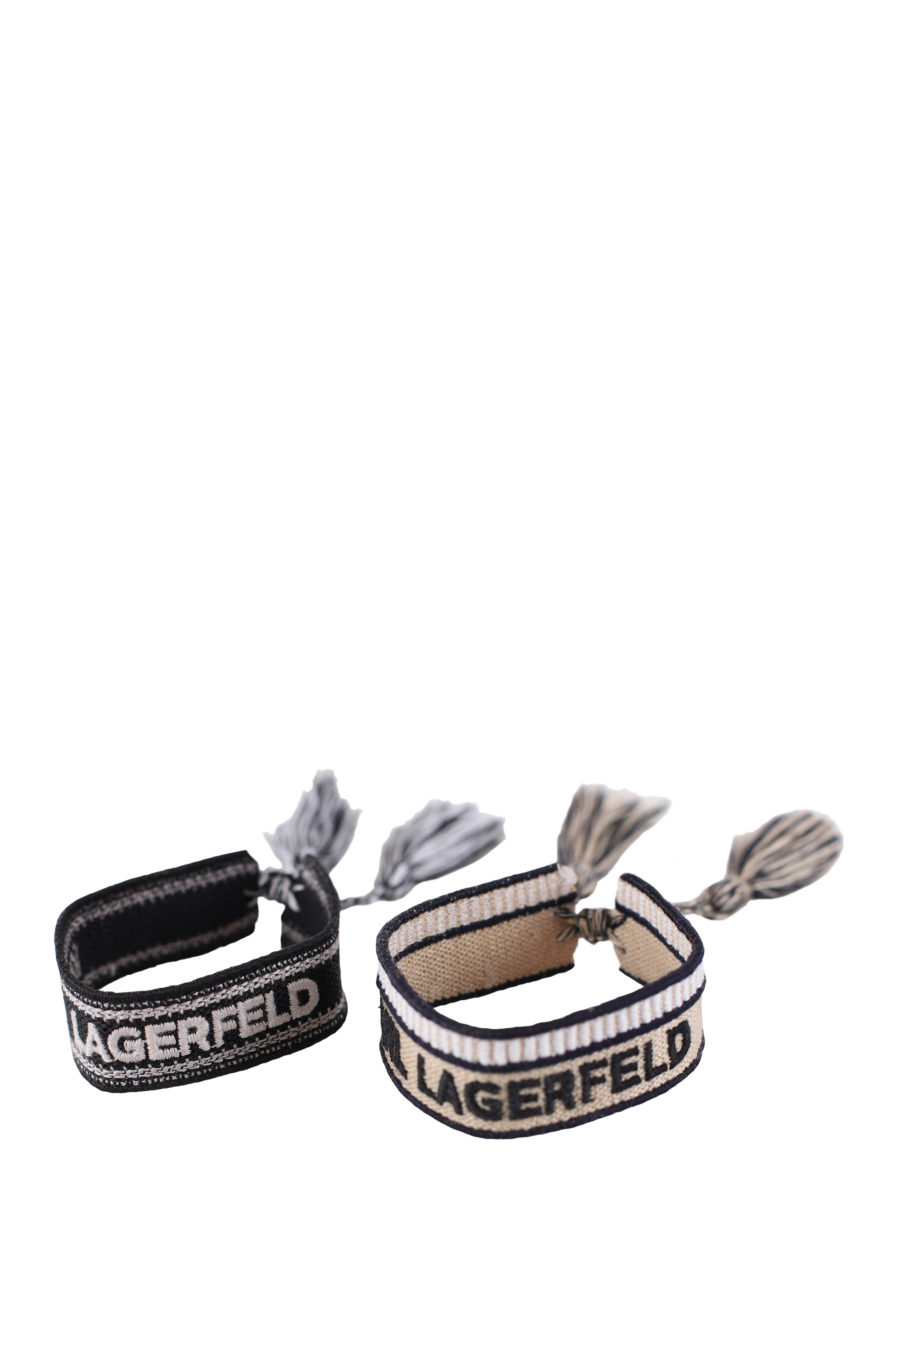 Set de dos pulseras tejidas negro y beige con logo - IMG 0304